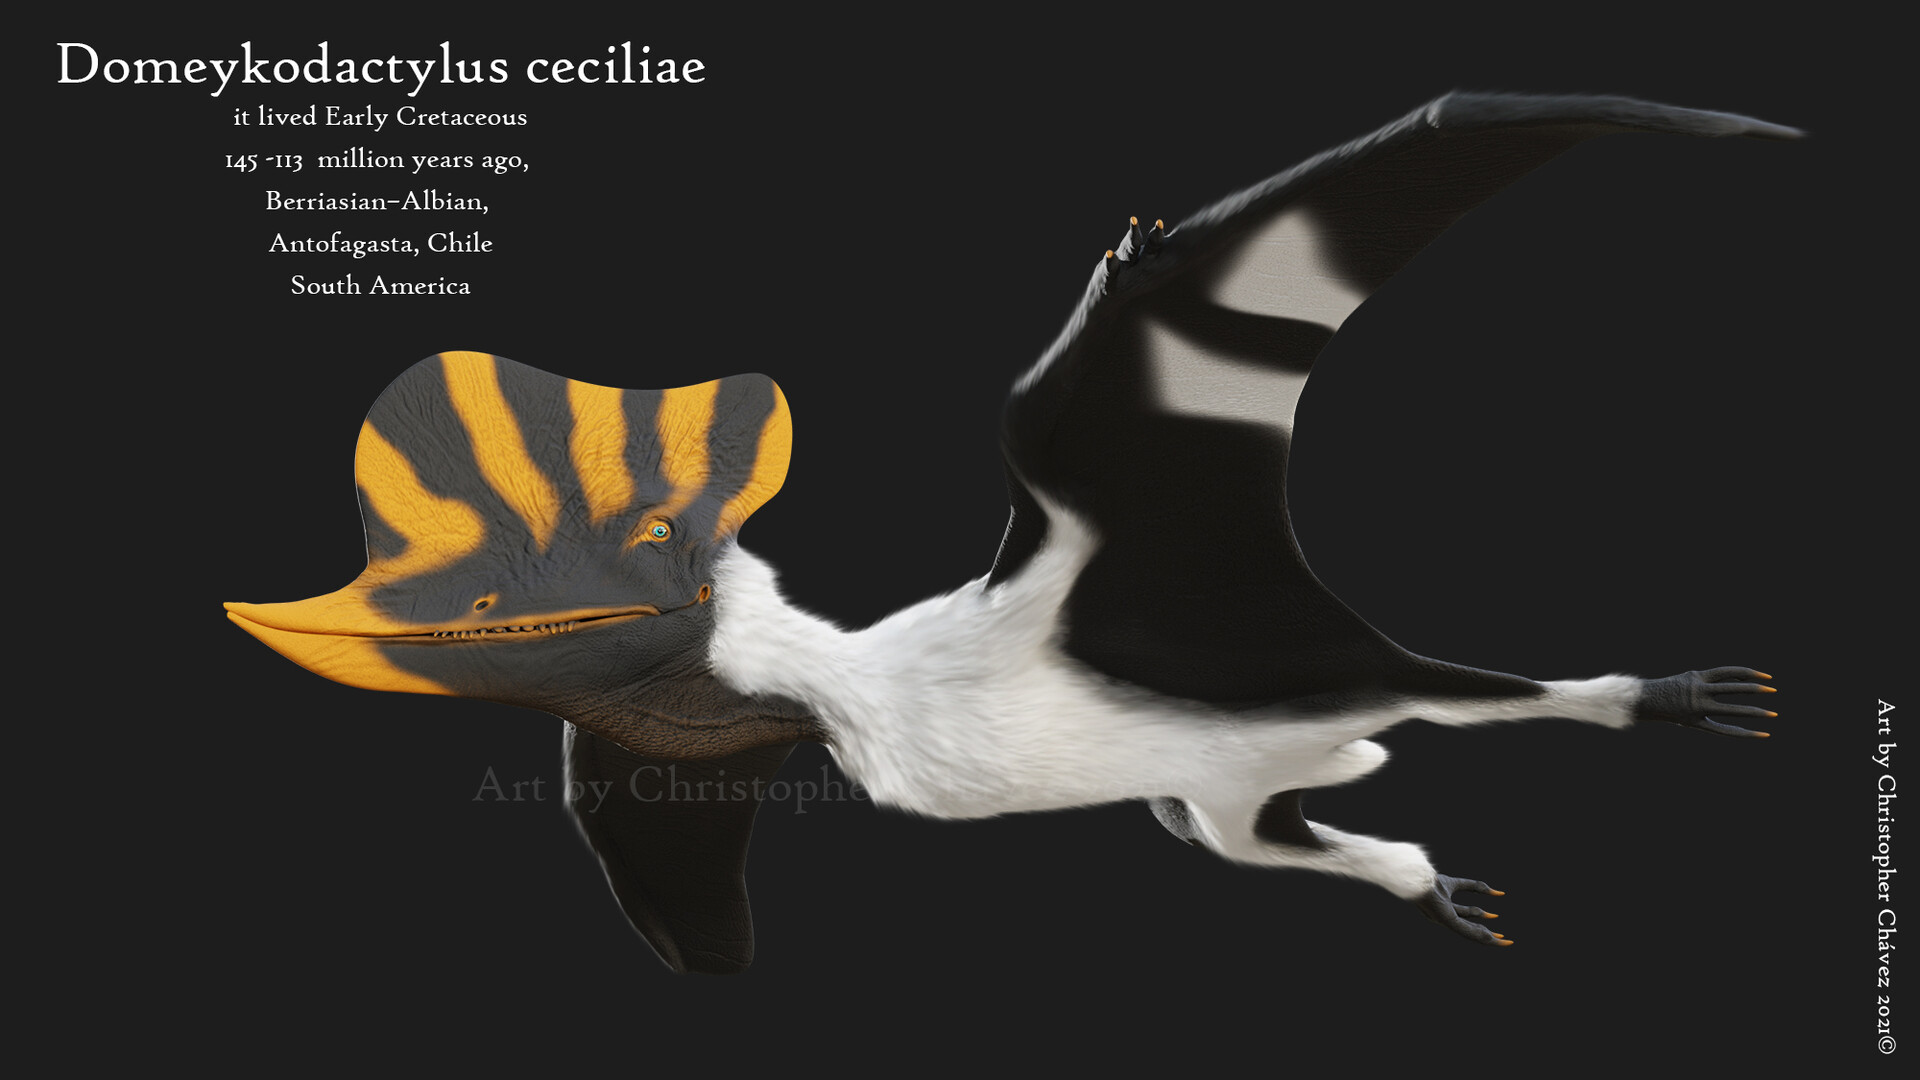 Reconstrucción del posible aspecto en vida de Domeykodactylus ceciliae